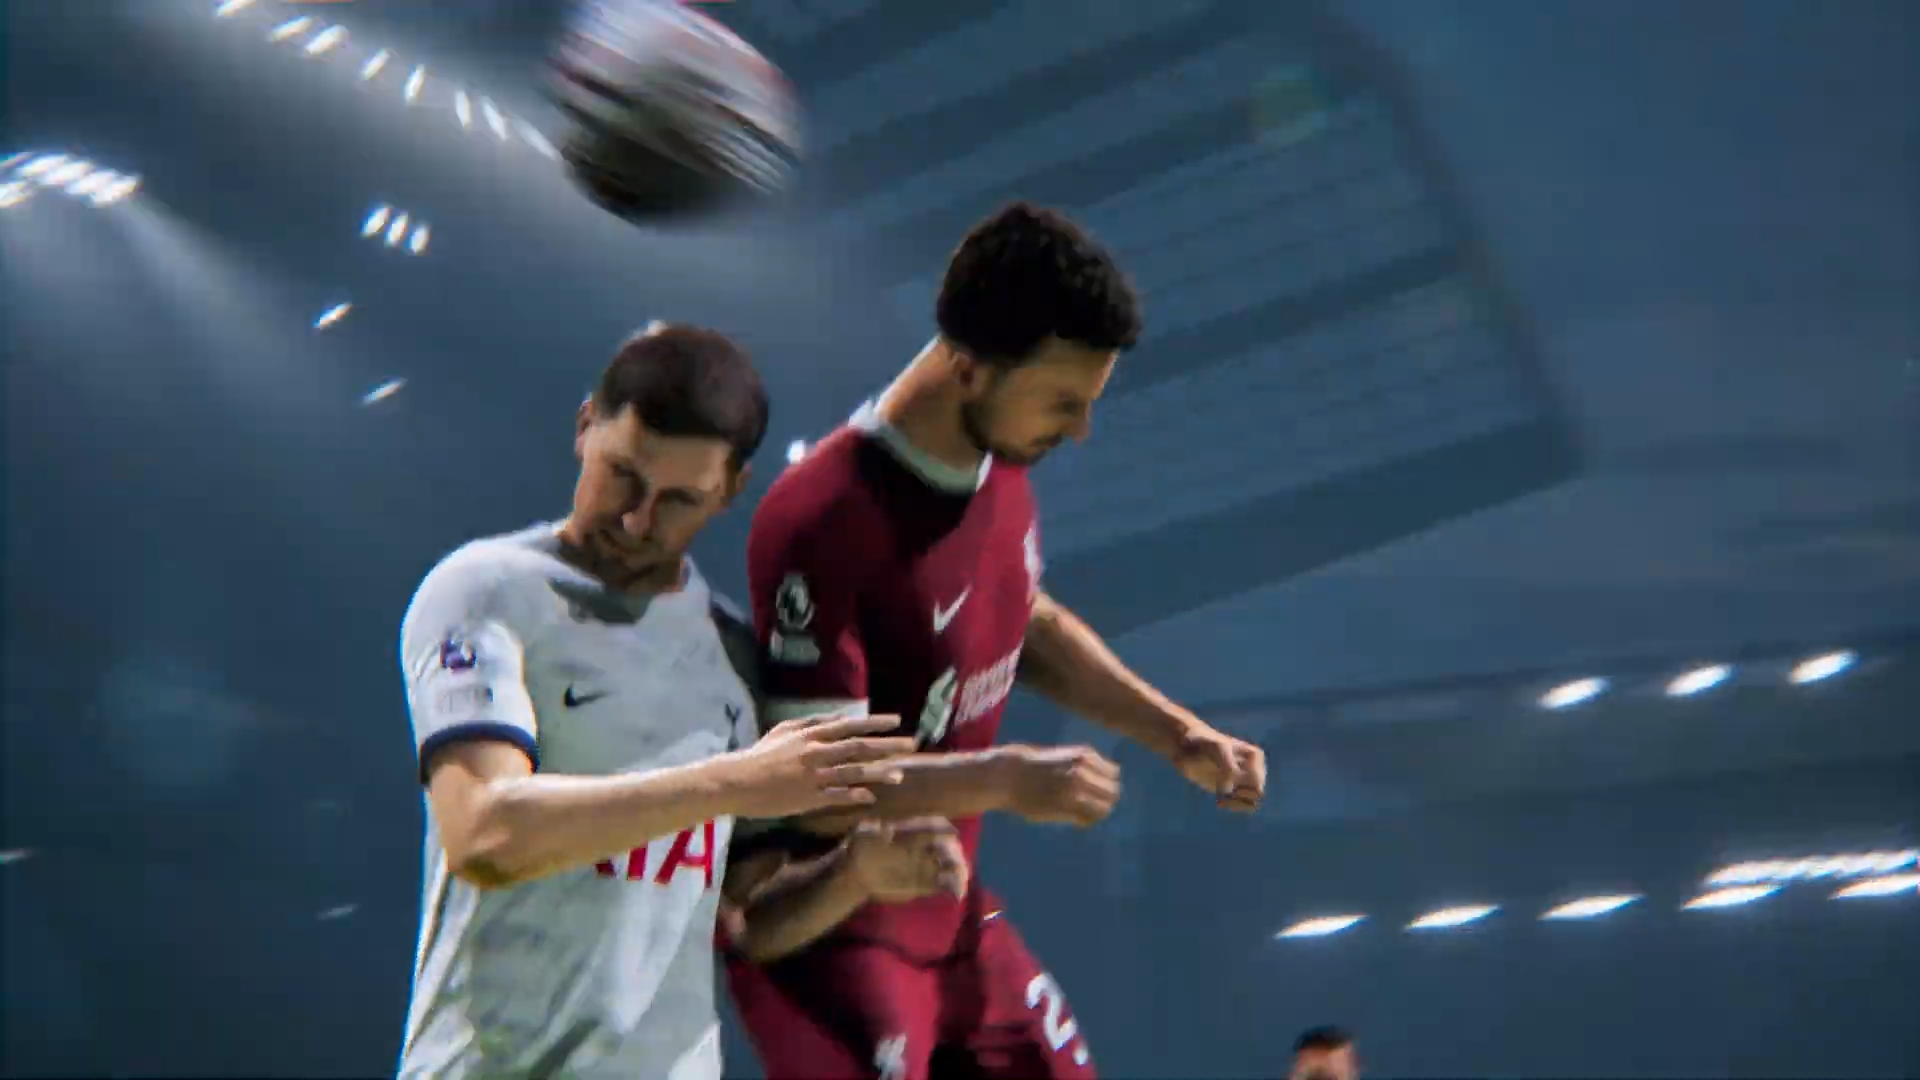 EA Sports FC 24: Por que o novo FIFA não se chamará FIFA 24? Parceria chega  ao fim após 30 anos – Money Times